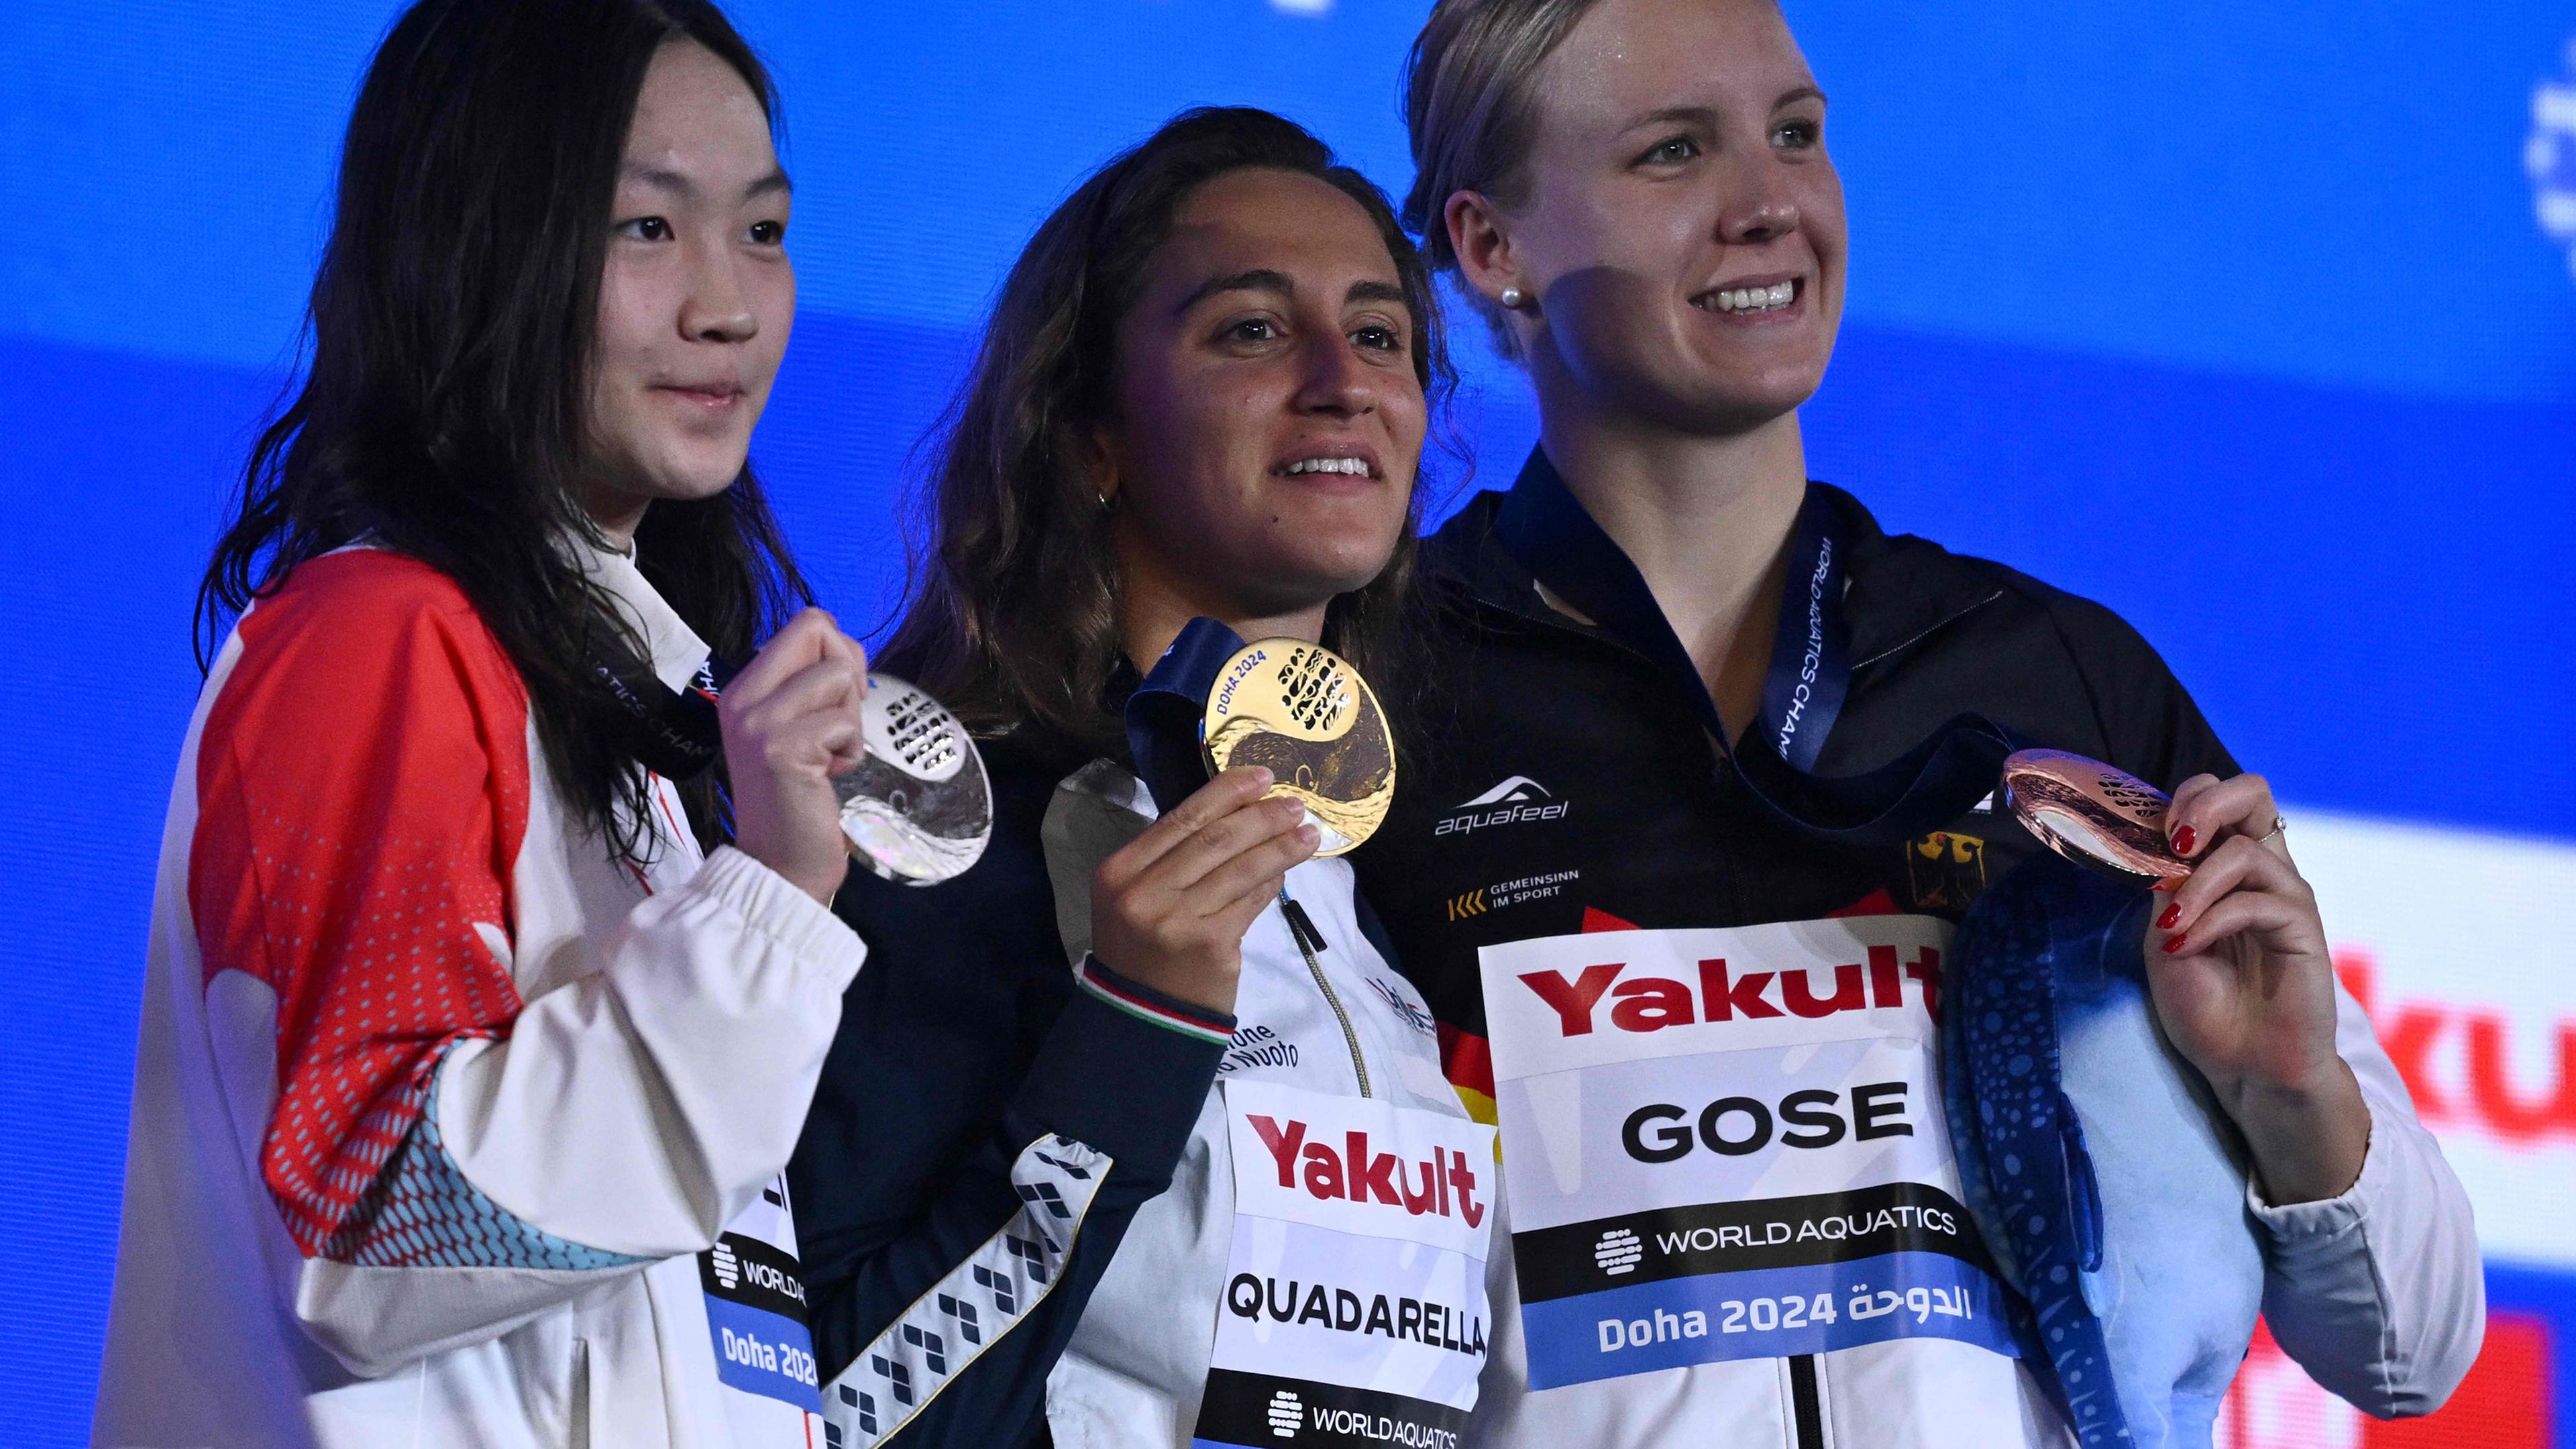 Katar, Doha, Schwimm-WM, 1500m Freistil: Die Goldmedaillengewinnerin Simona Quadarella (Mitte) aus Italien, die Silbermedaillengewinnerin Bingjie Li (L) aus China und die Bronzemedaillengewinnerin Isabel Gose (R) aus Deutschland